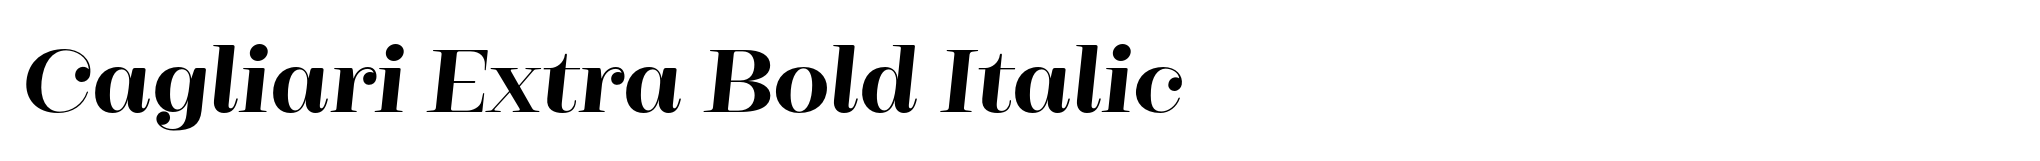 Cagliari Extra Bold Italic image